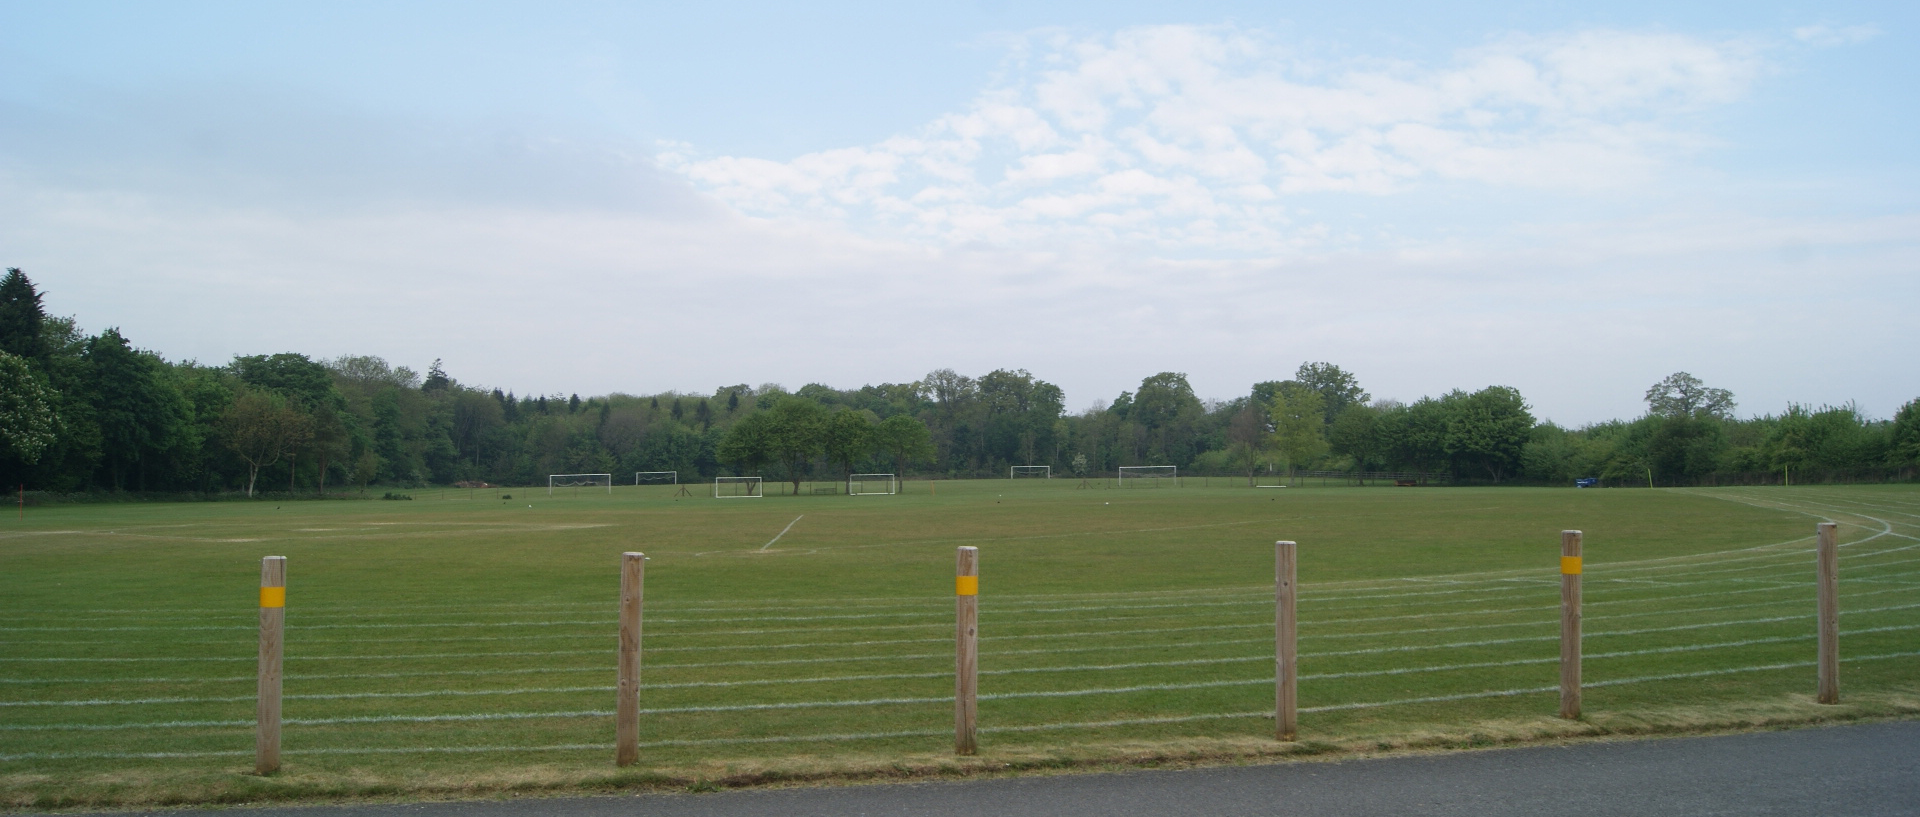 Cirencester Deer Park School playing fields